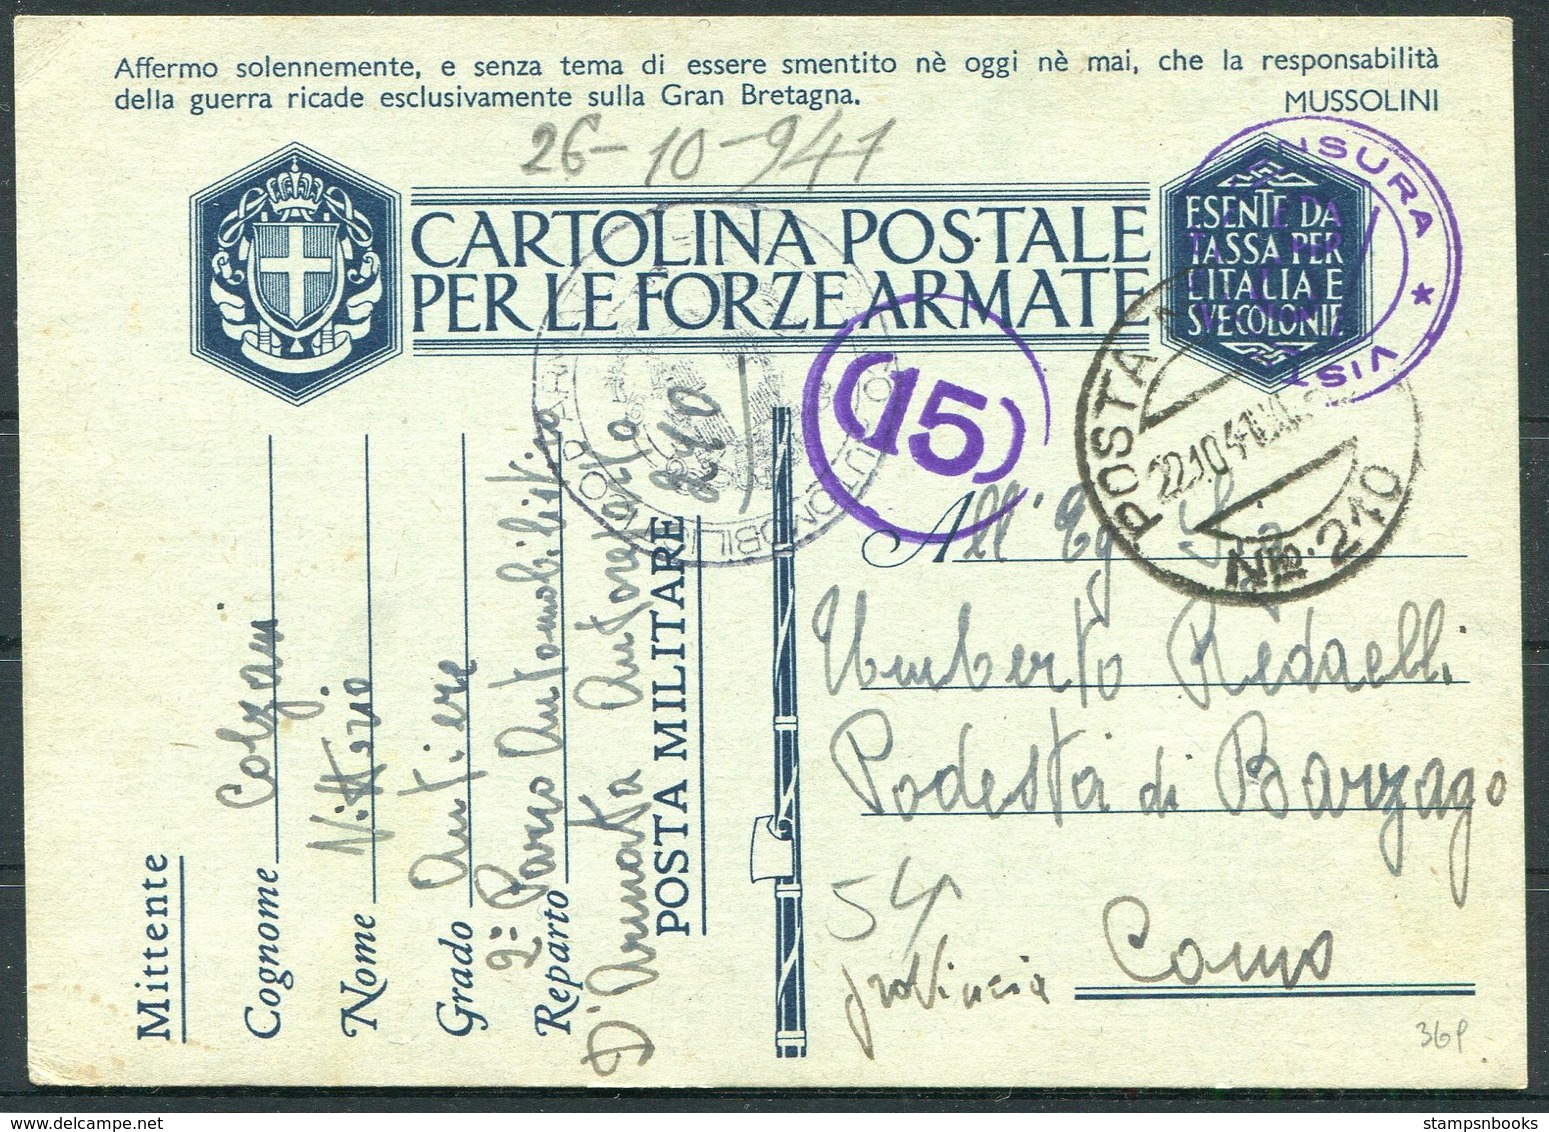 1941 Italy Cartolina Postale Per Le Forze Armate, Stationery Postcard. Post Militare 210 Censura - Como. Automobil - Marcophilia